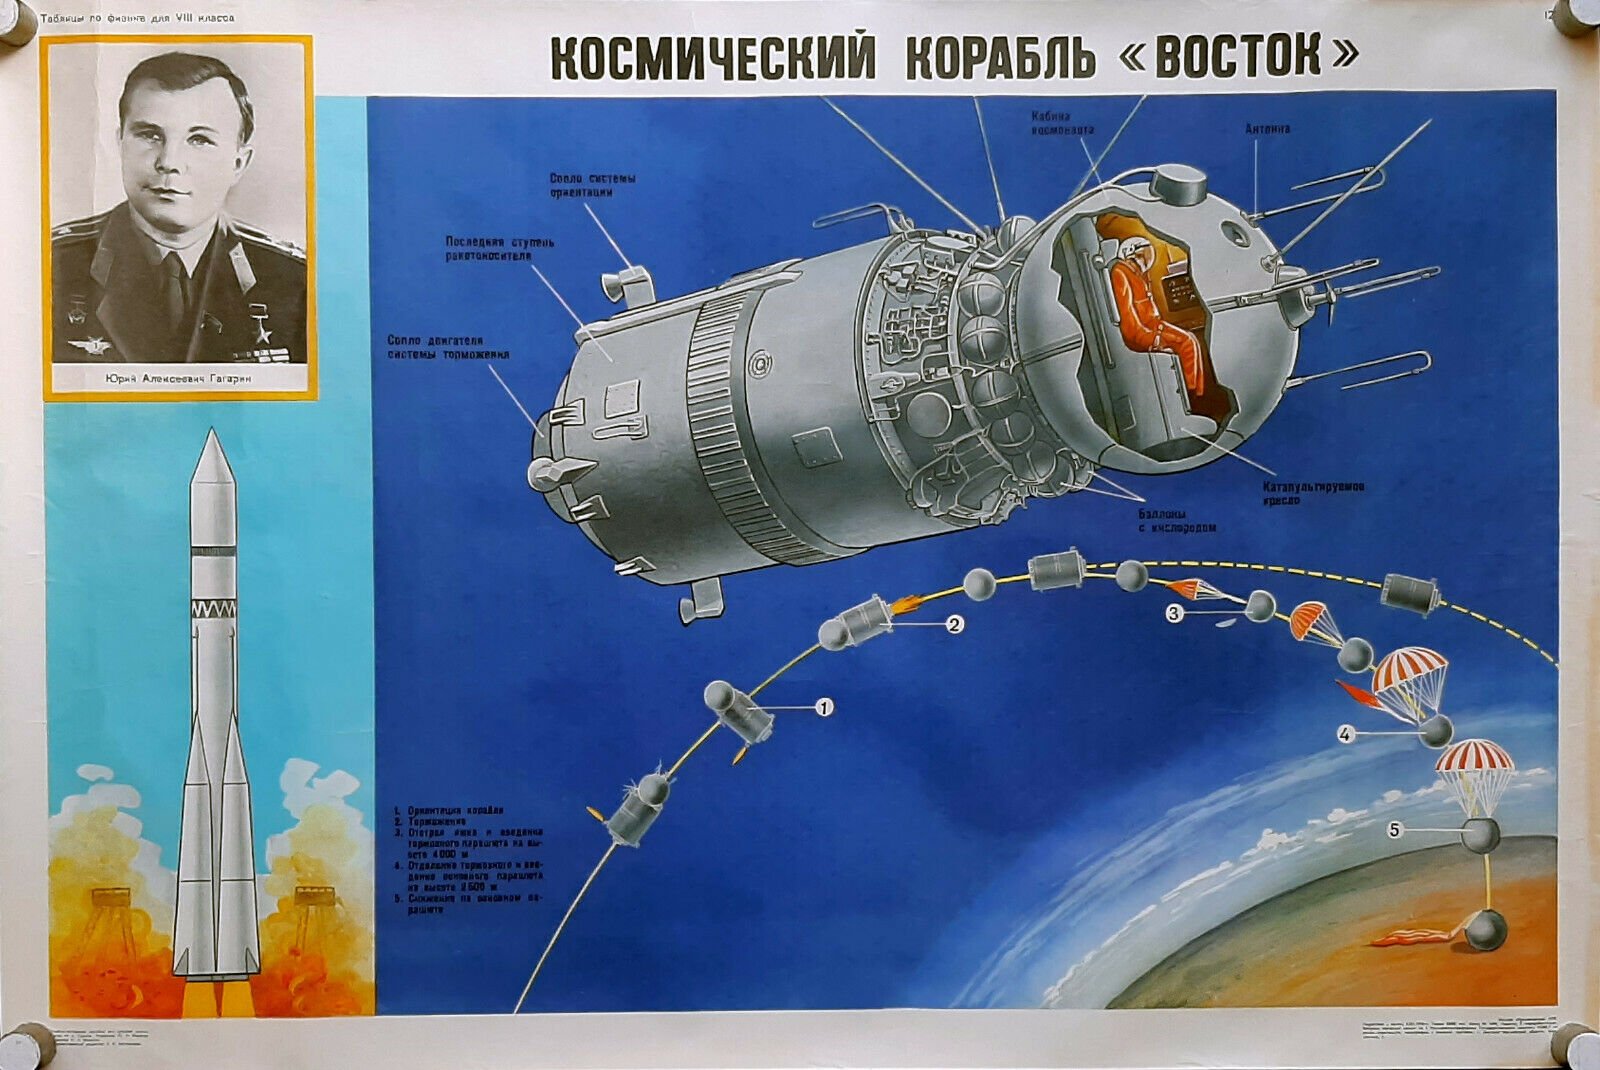 Первый советский космический корабль восток. Восток 1 СССР. Восток 1 Гагарин. Восток-1 космический корабль. Космический корабль Восток.